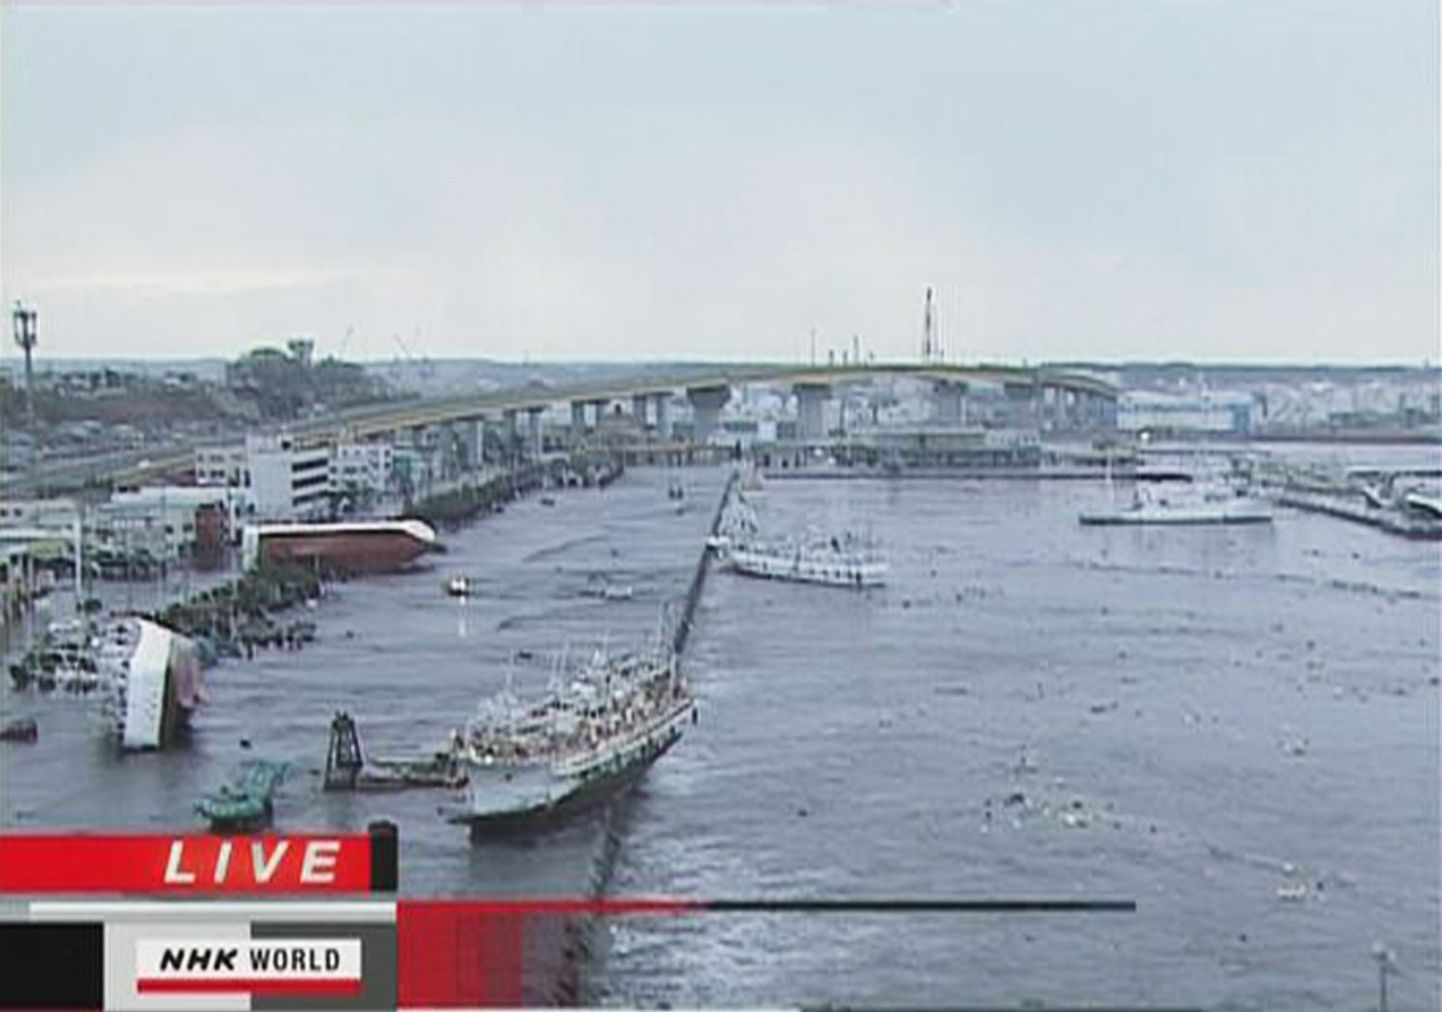 Jaapani telejaama NHK kaadrid Aomori prefektuuris asuvast Hachinohe sadamast, kus on näha kummuli keeratud laevu.